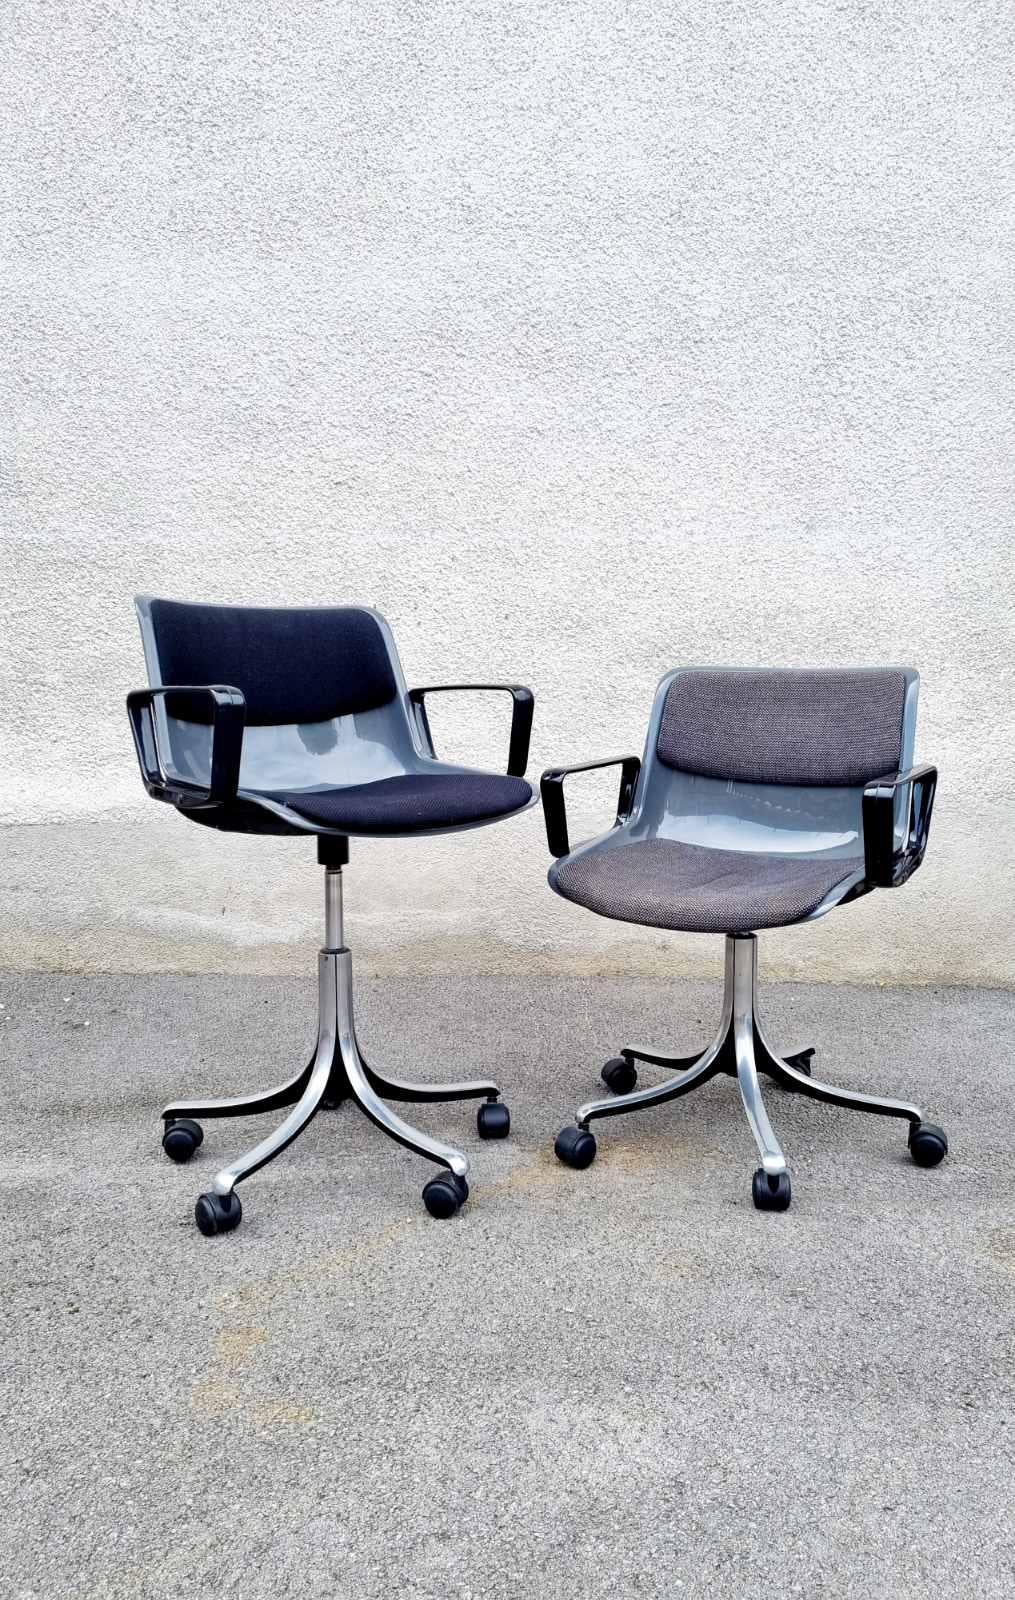 Mid-20th Century Italian Modern Modus Chair by Osvaldo Borsani for Tecno, Italy 60s For Sale